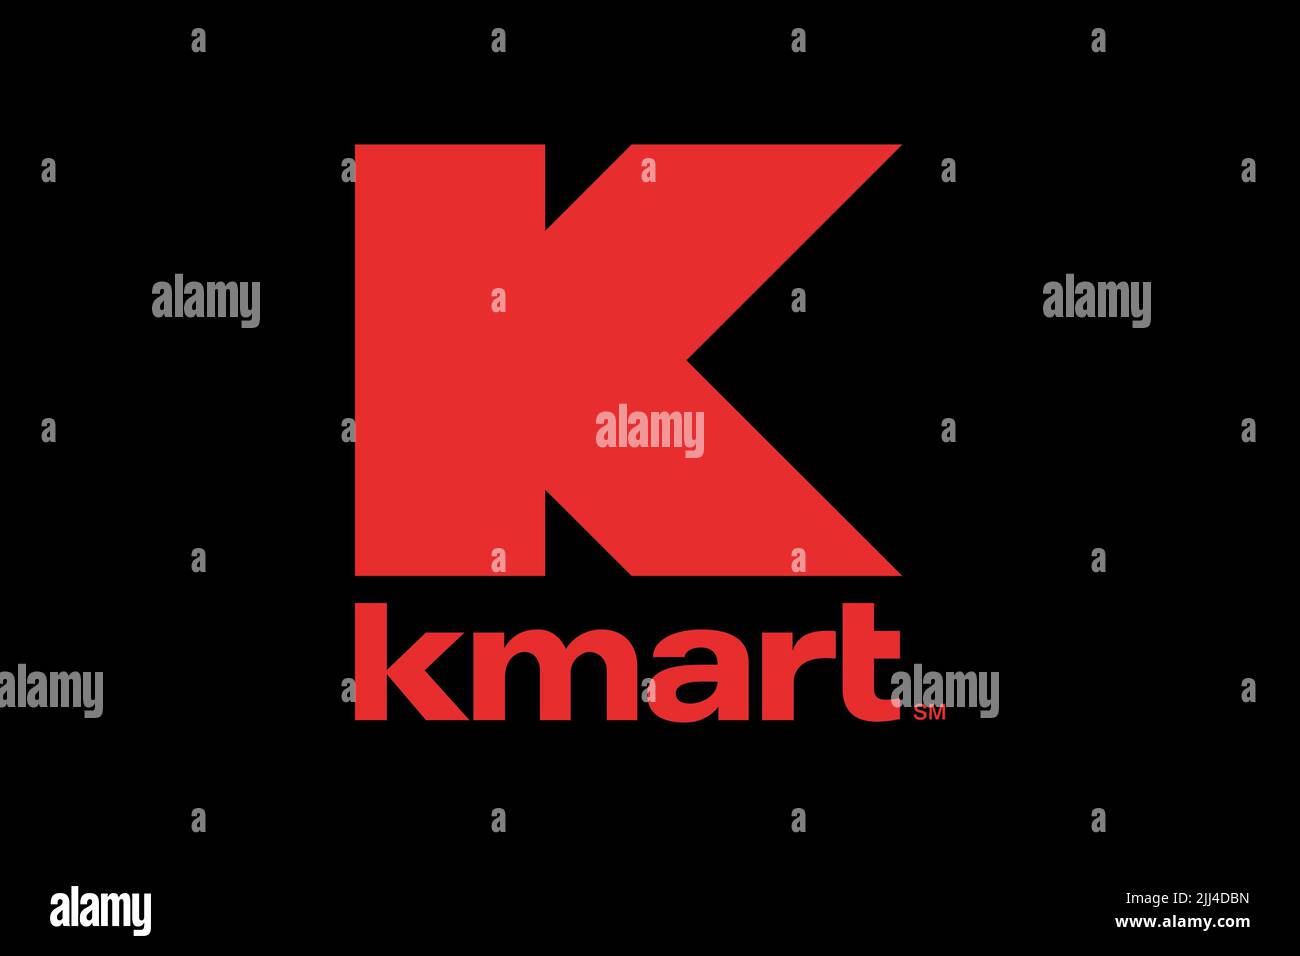 Kmart, Logo, Black background Stock Photo